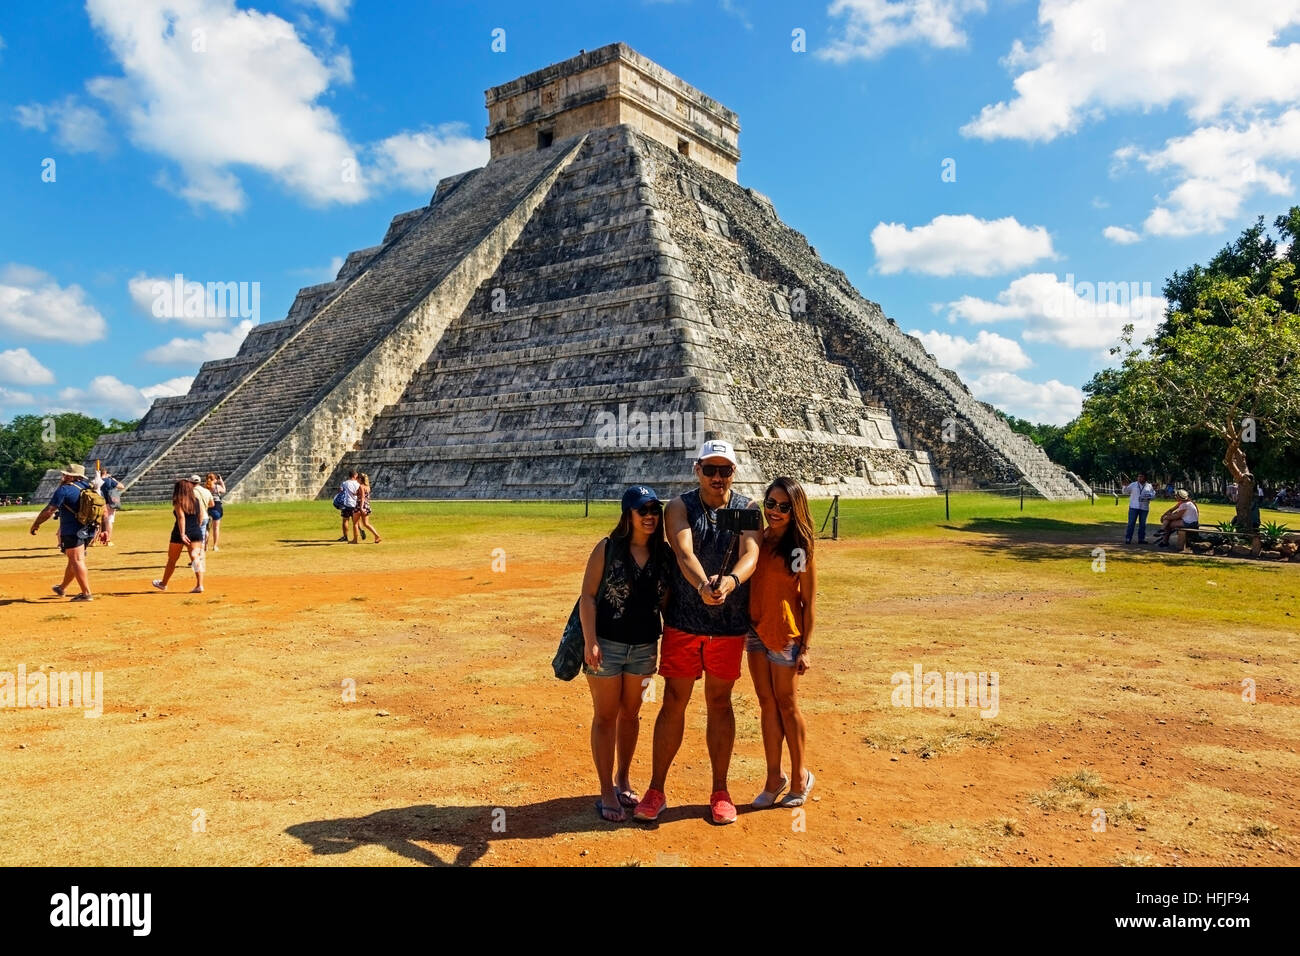 La struttura centrale del Castillo, nell'antico tempio Maya di Chichen Itza, Yucatan, Messico Foto Stock